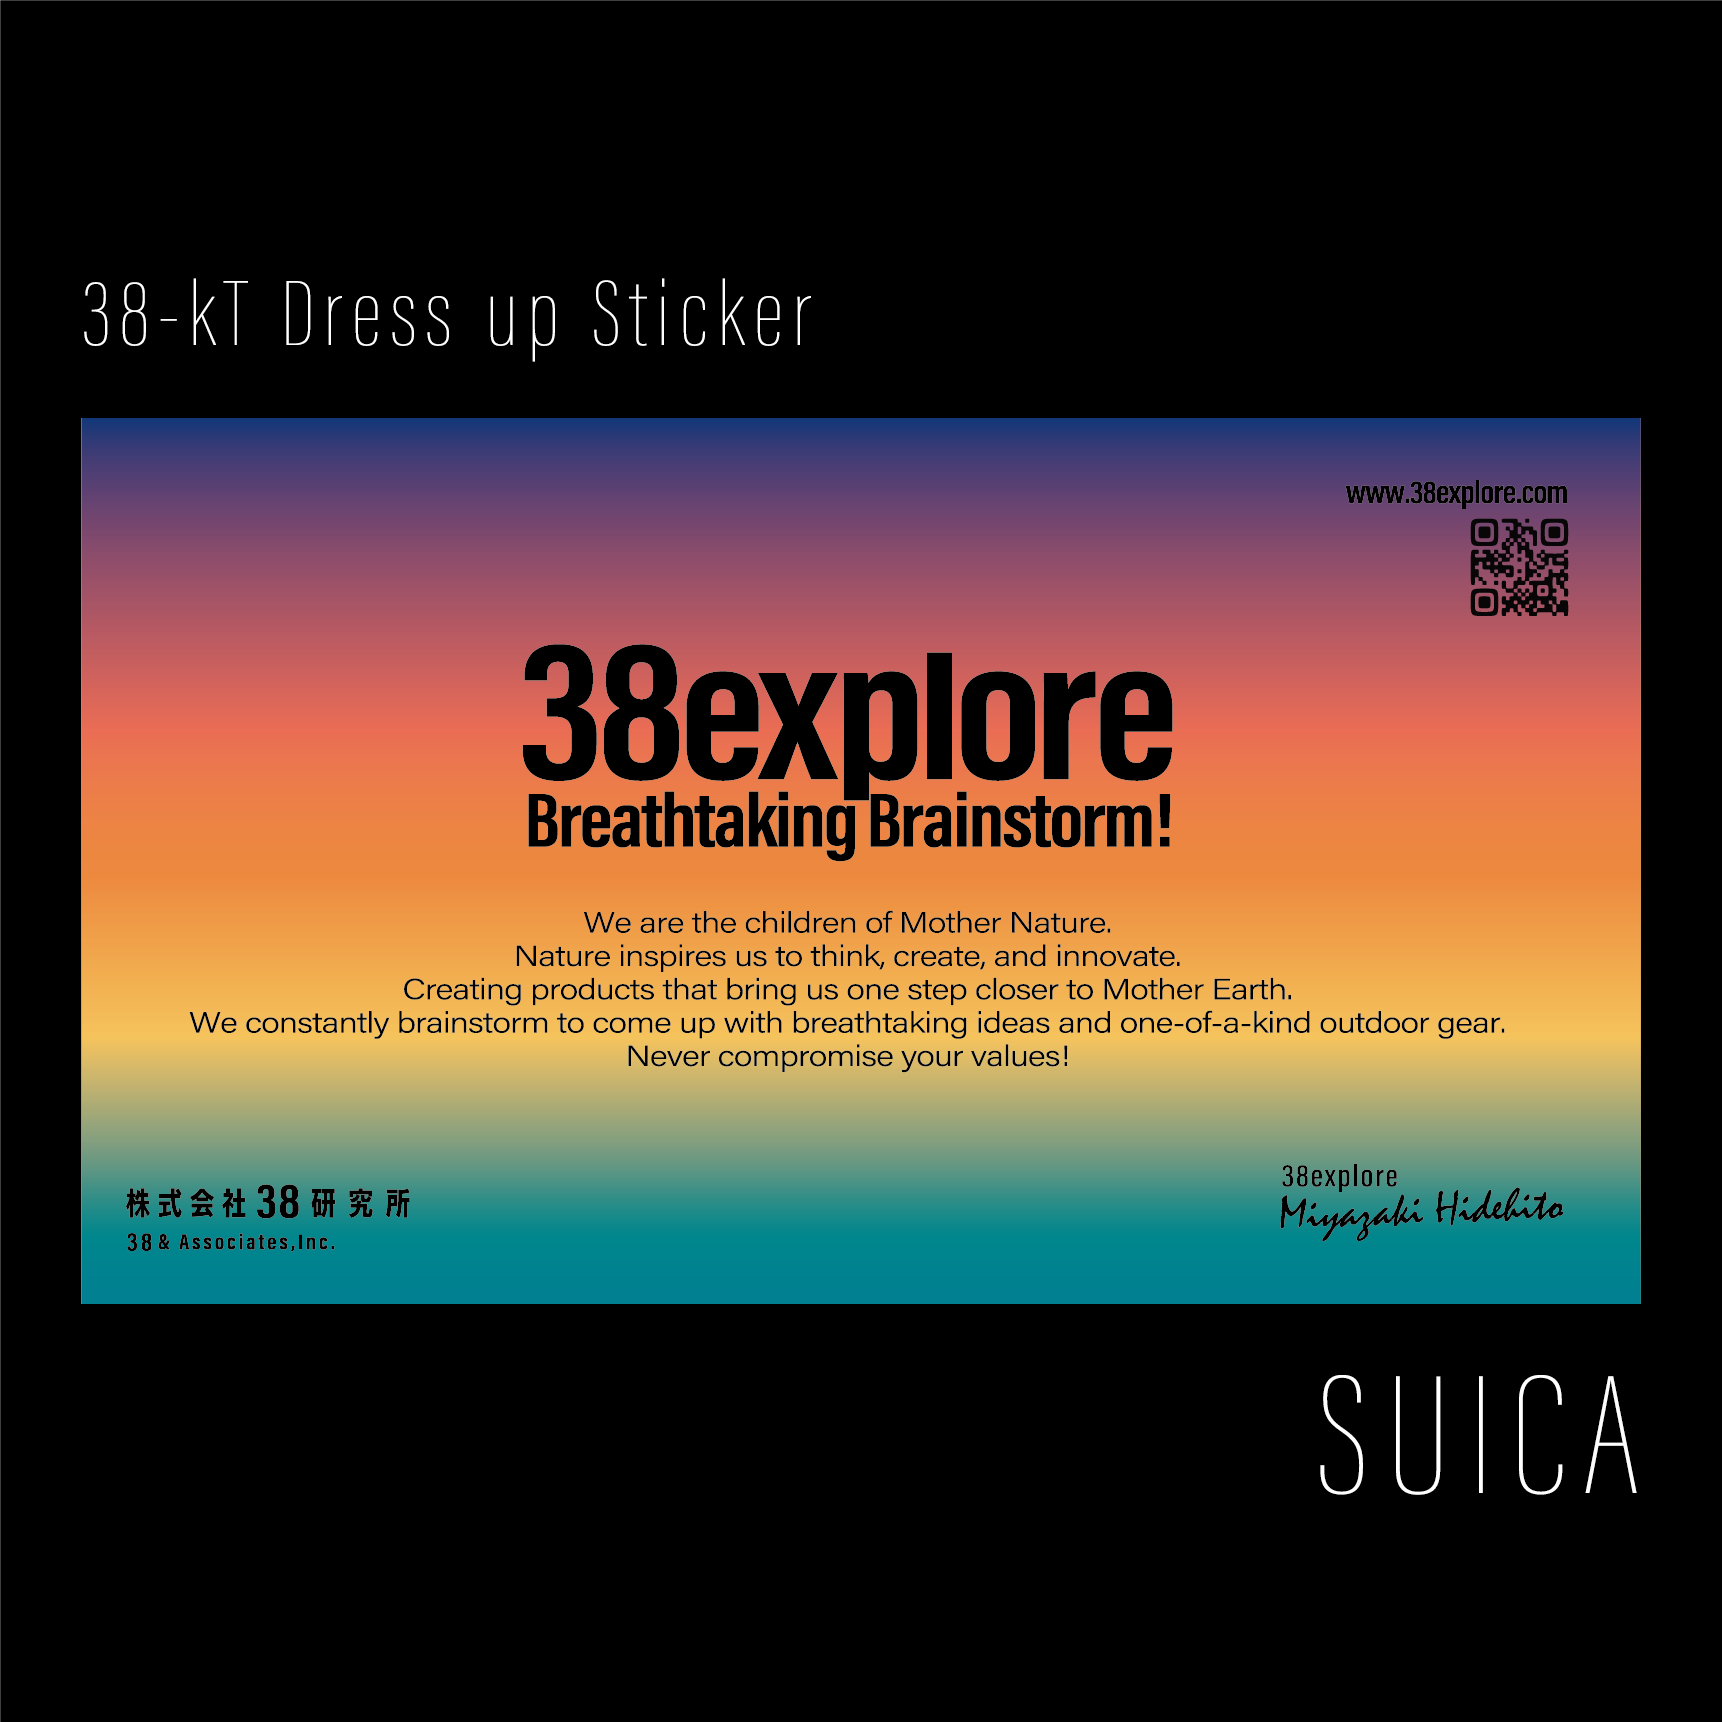 38-kT Dress up Sticker - SUICA